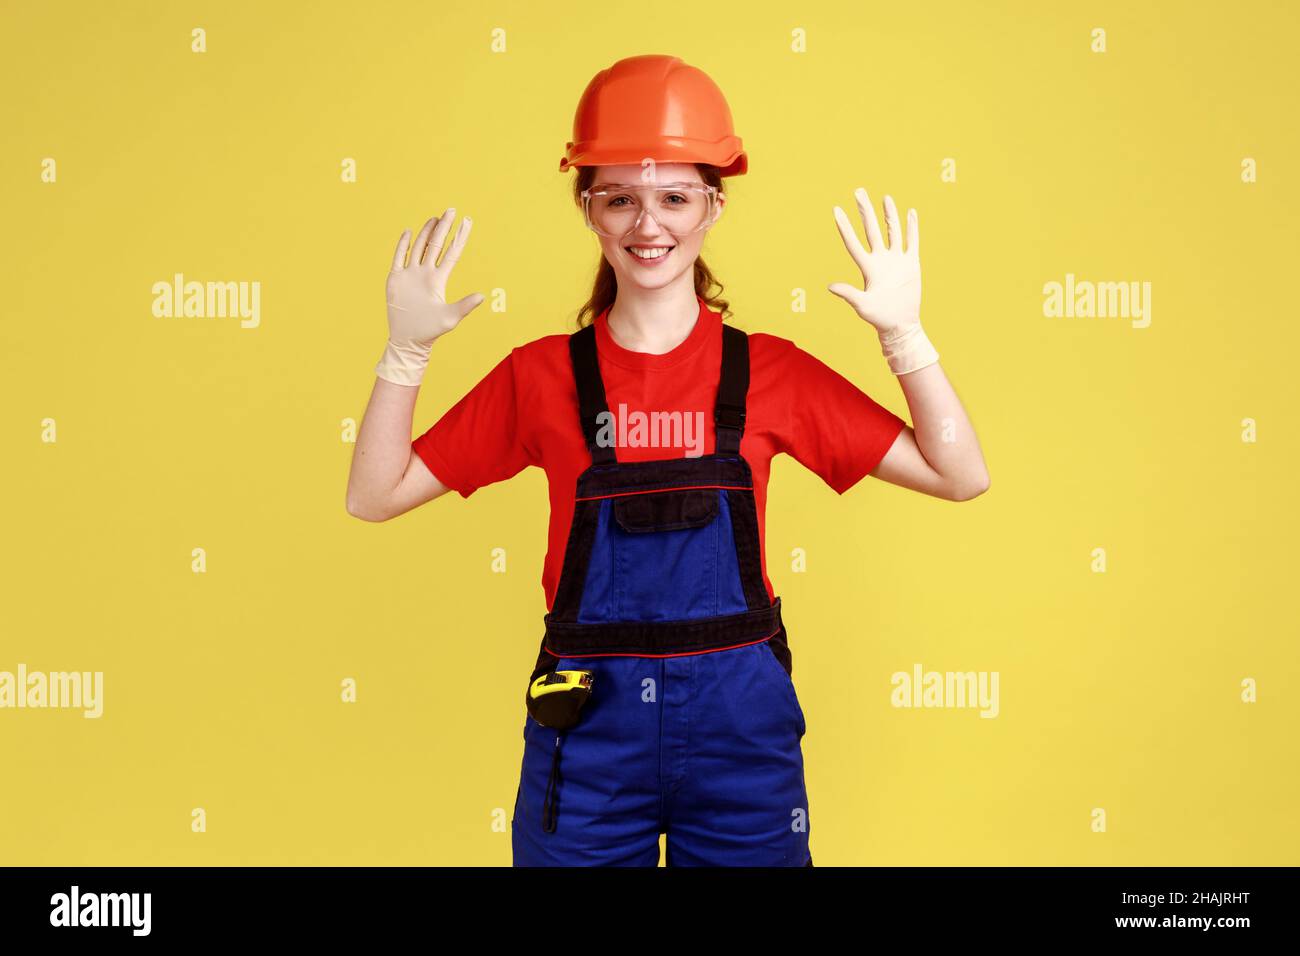 Positiv lächelnde Baumeisterin, die mit erhobenen Armen steht und ihre Gummihandschuhe zum Schutz der Hände zeigt, Overalls und Schutzhelm trägt. Innenaufnahme des Studios isoliert auf gelbem Hintergrund. Stockfoto